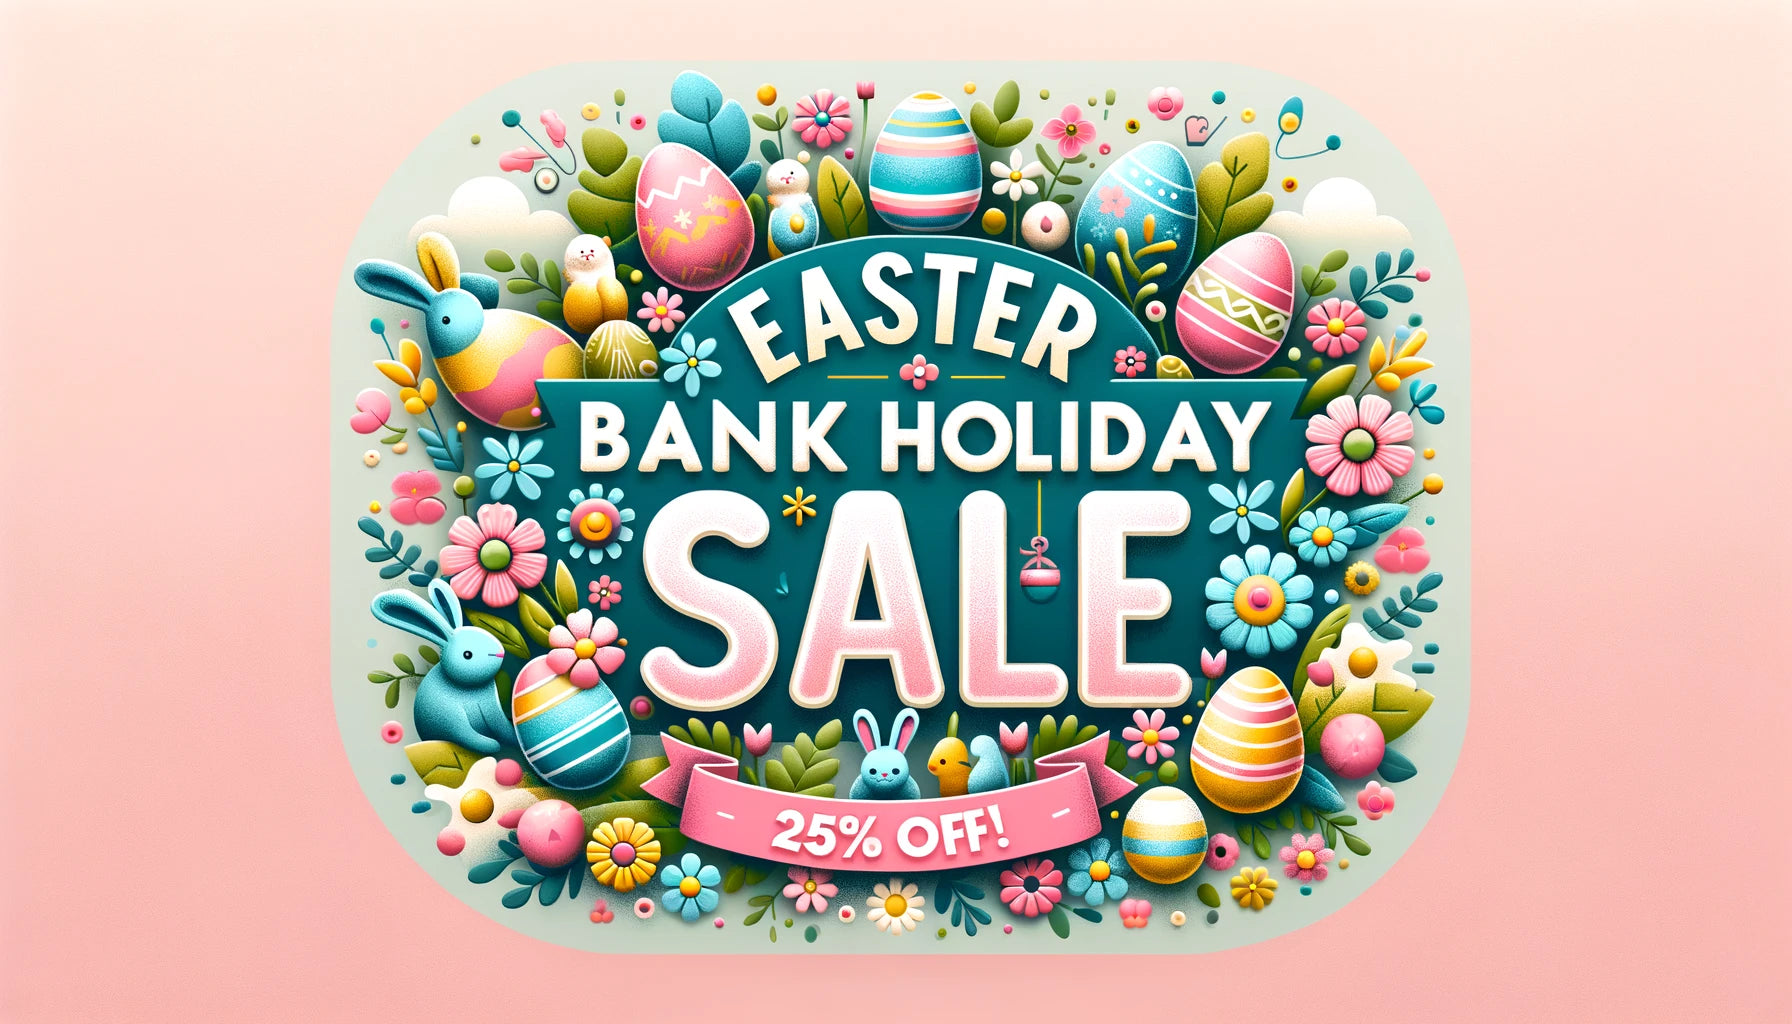 Une bannière de blog festive et accrocheuse pour une vente des jours fériés de Pâques, sur le thème de Pâques et du printemps.